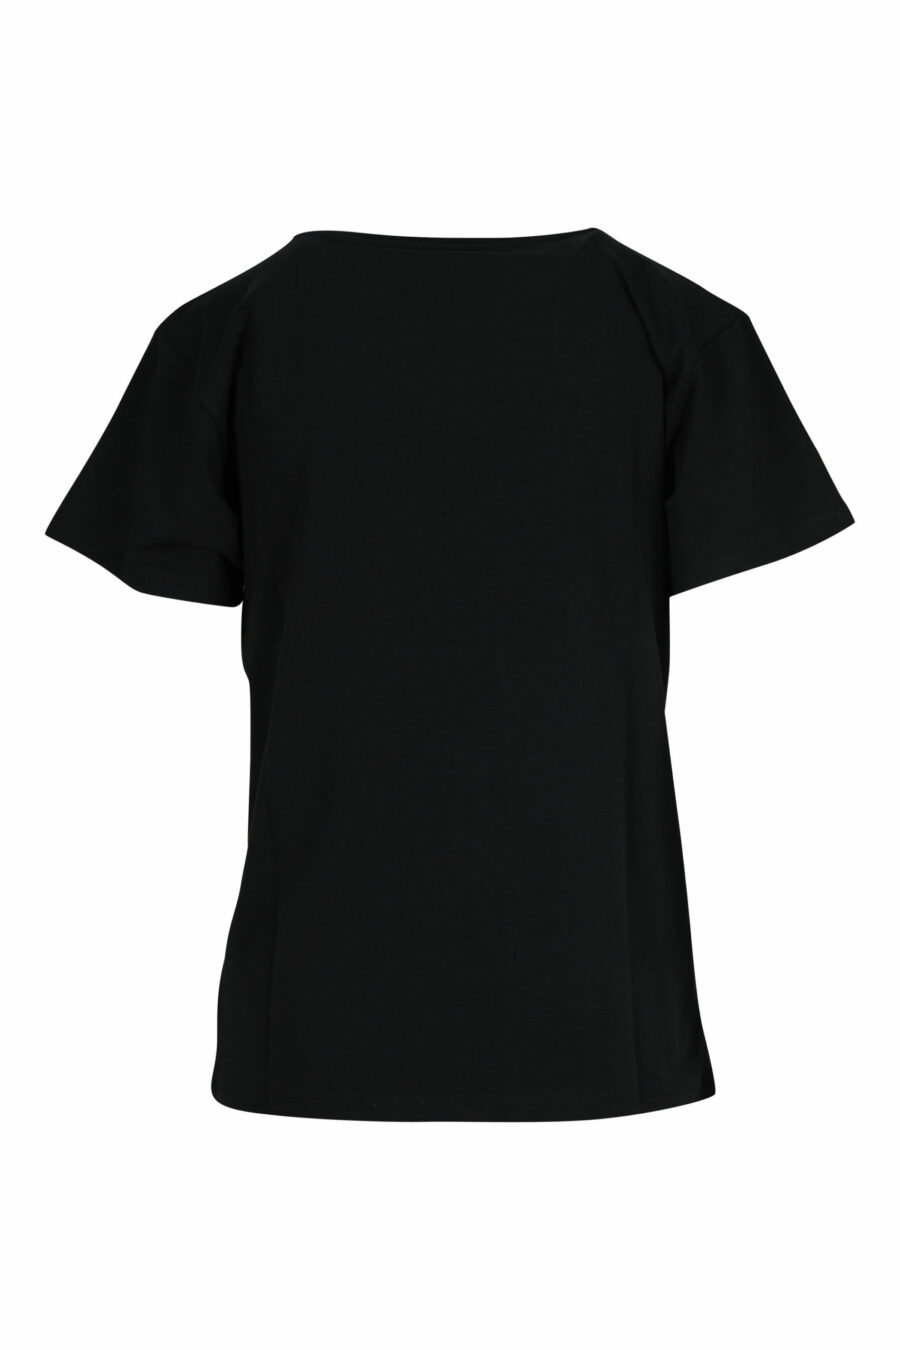 Camiseta negra con minilogo oso blanco - 667113355306 1 scaled